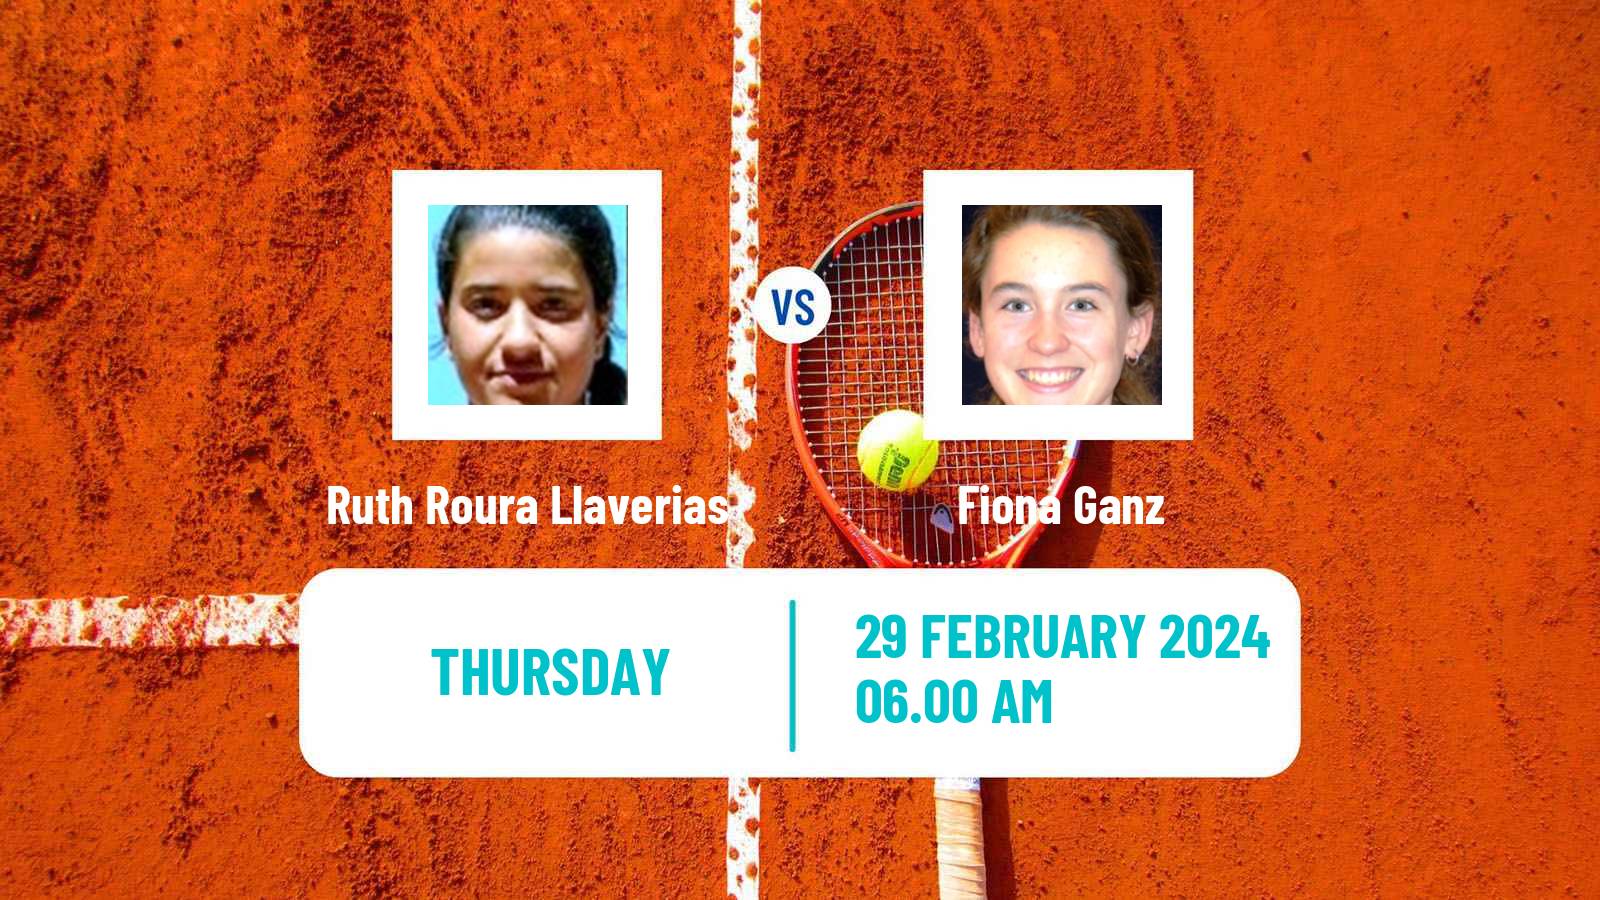 Tennis ITF W15 Manacor 3 Women Ruth Roura Llaverias - Fiona Ganz